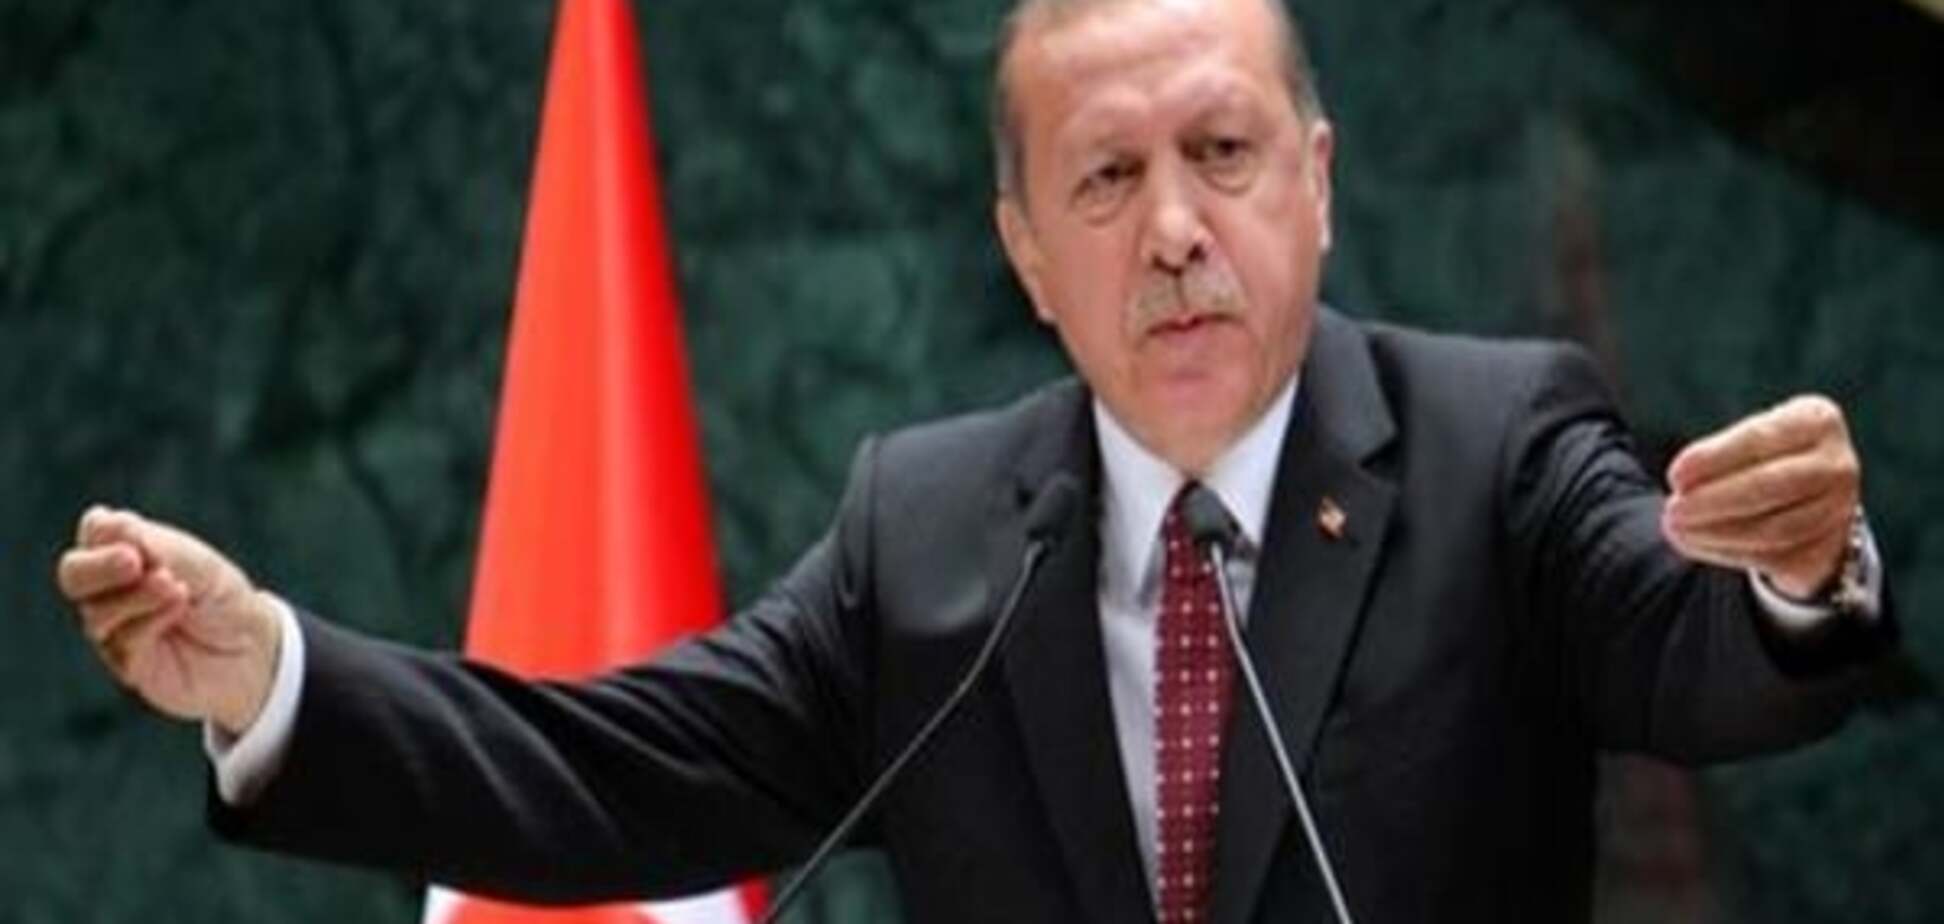 Суд заборонив цитувати майже весь вірш Бемерманна про Ердогана